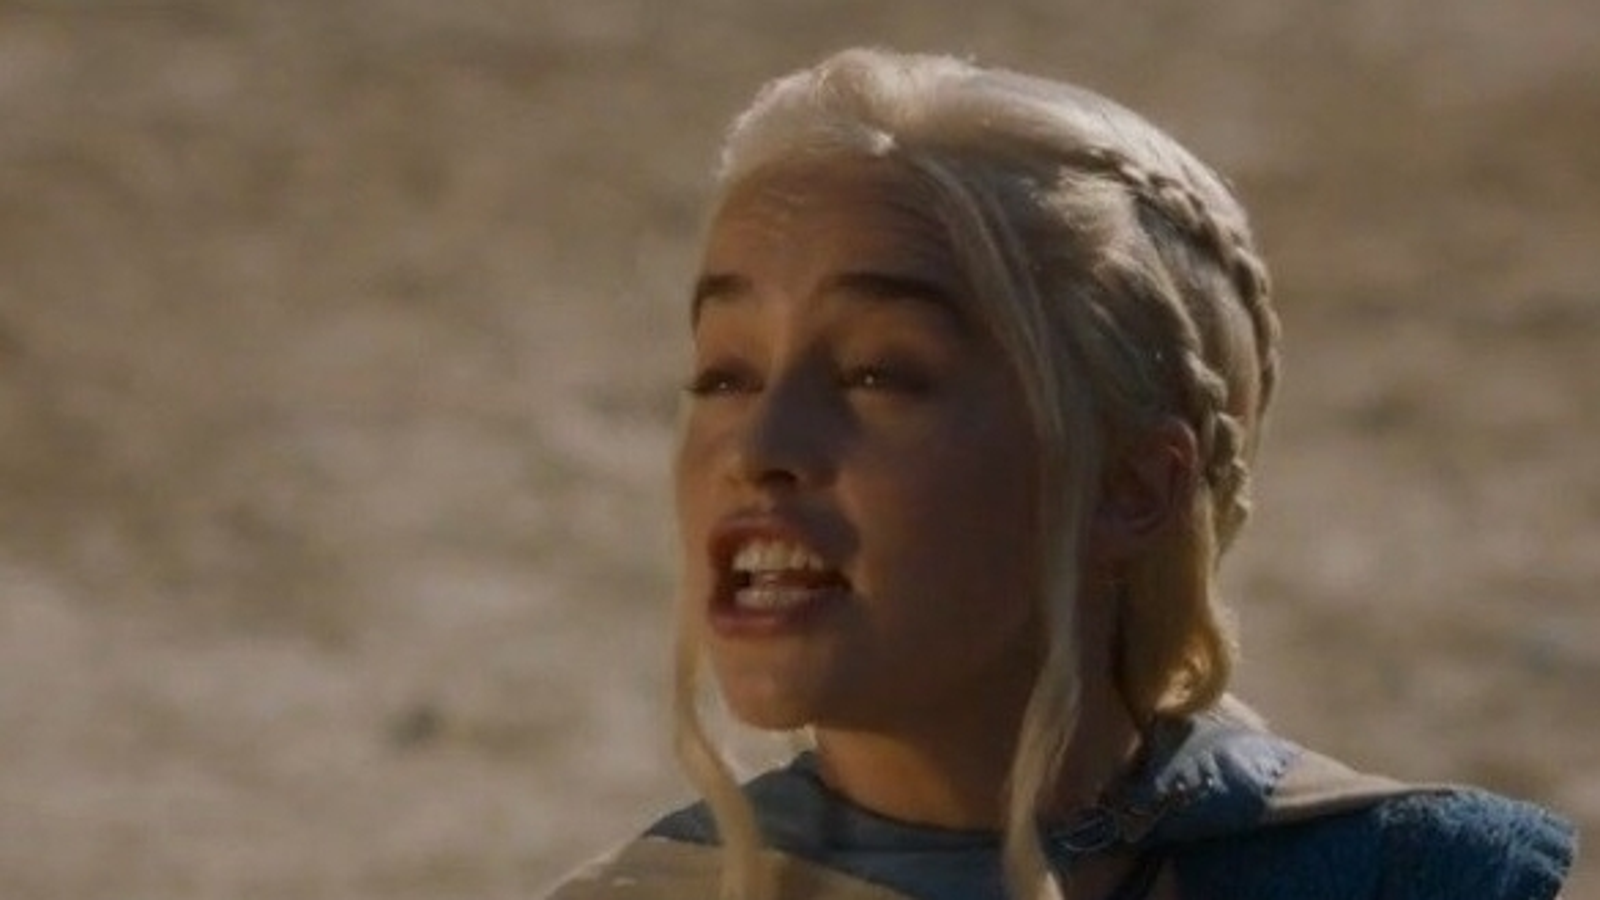 Elenco de Game of Thrones negocia contratos para a oitava temporada -  Notícias de séries - AdoroCinema